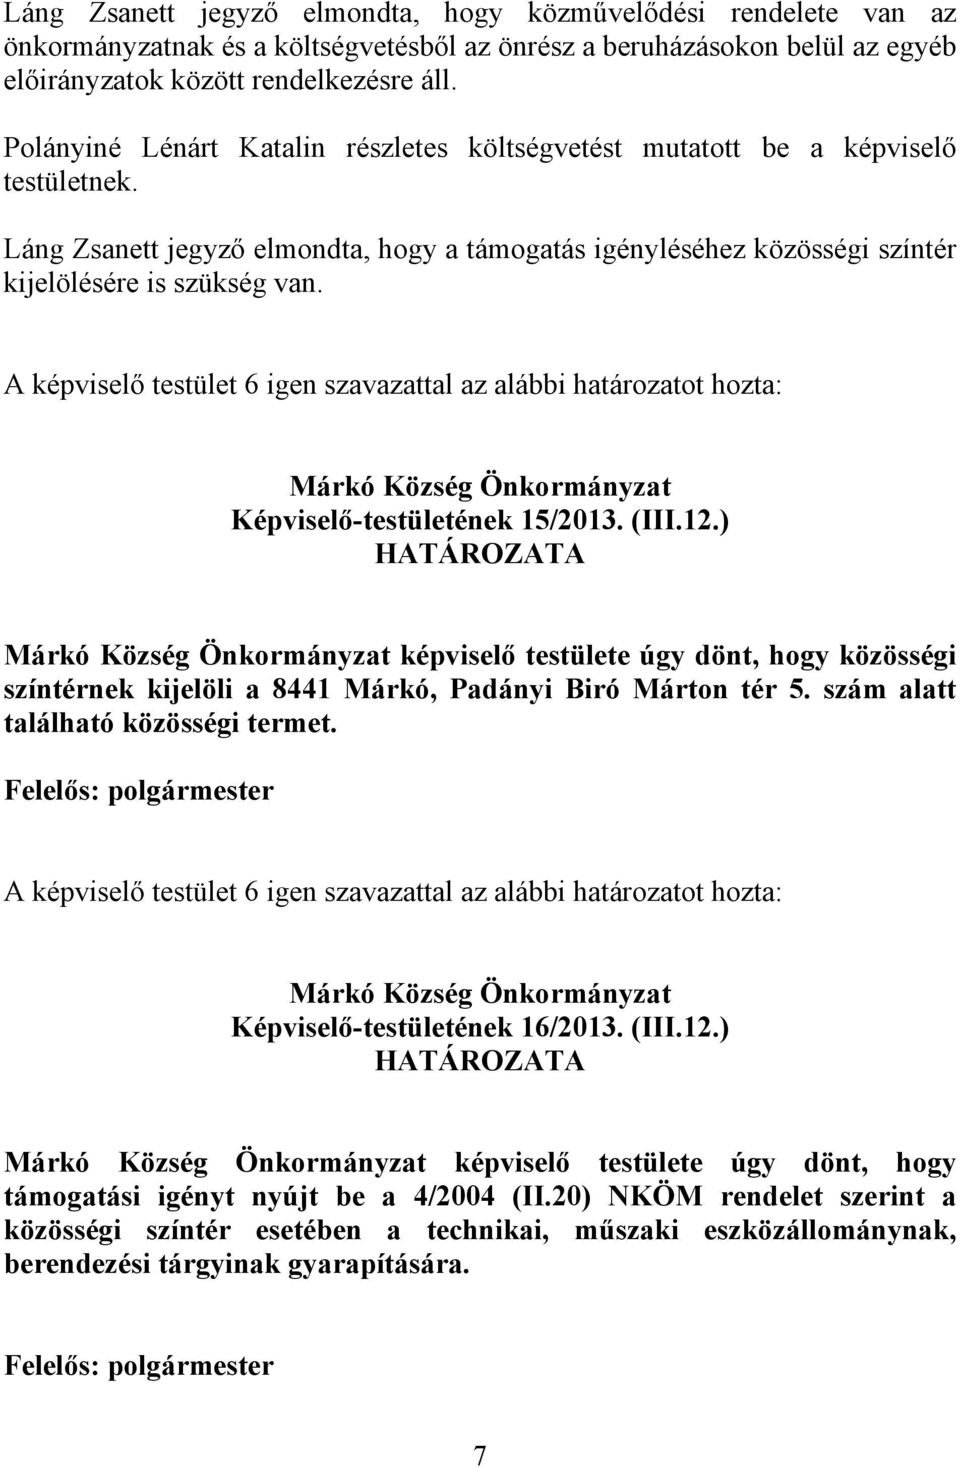 Képviselő-testületének 15/2013. (III.12.) képviselő testülete úgy dönt, hogy közösségi színtérnek kijelöli a 8441 Márkó, Padányi Biró Márton tér 5. szám alatt található közösségi termet.